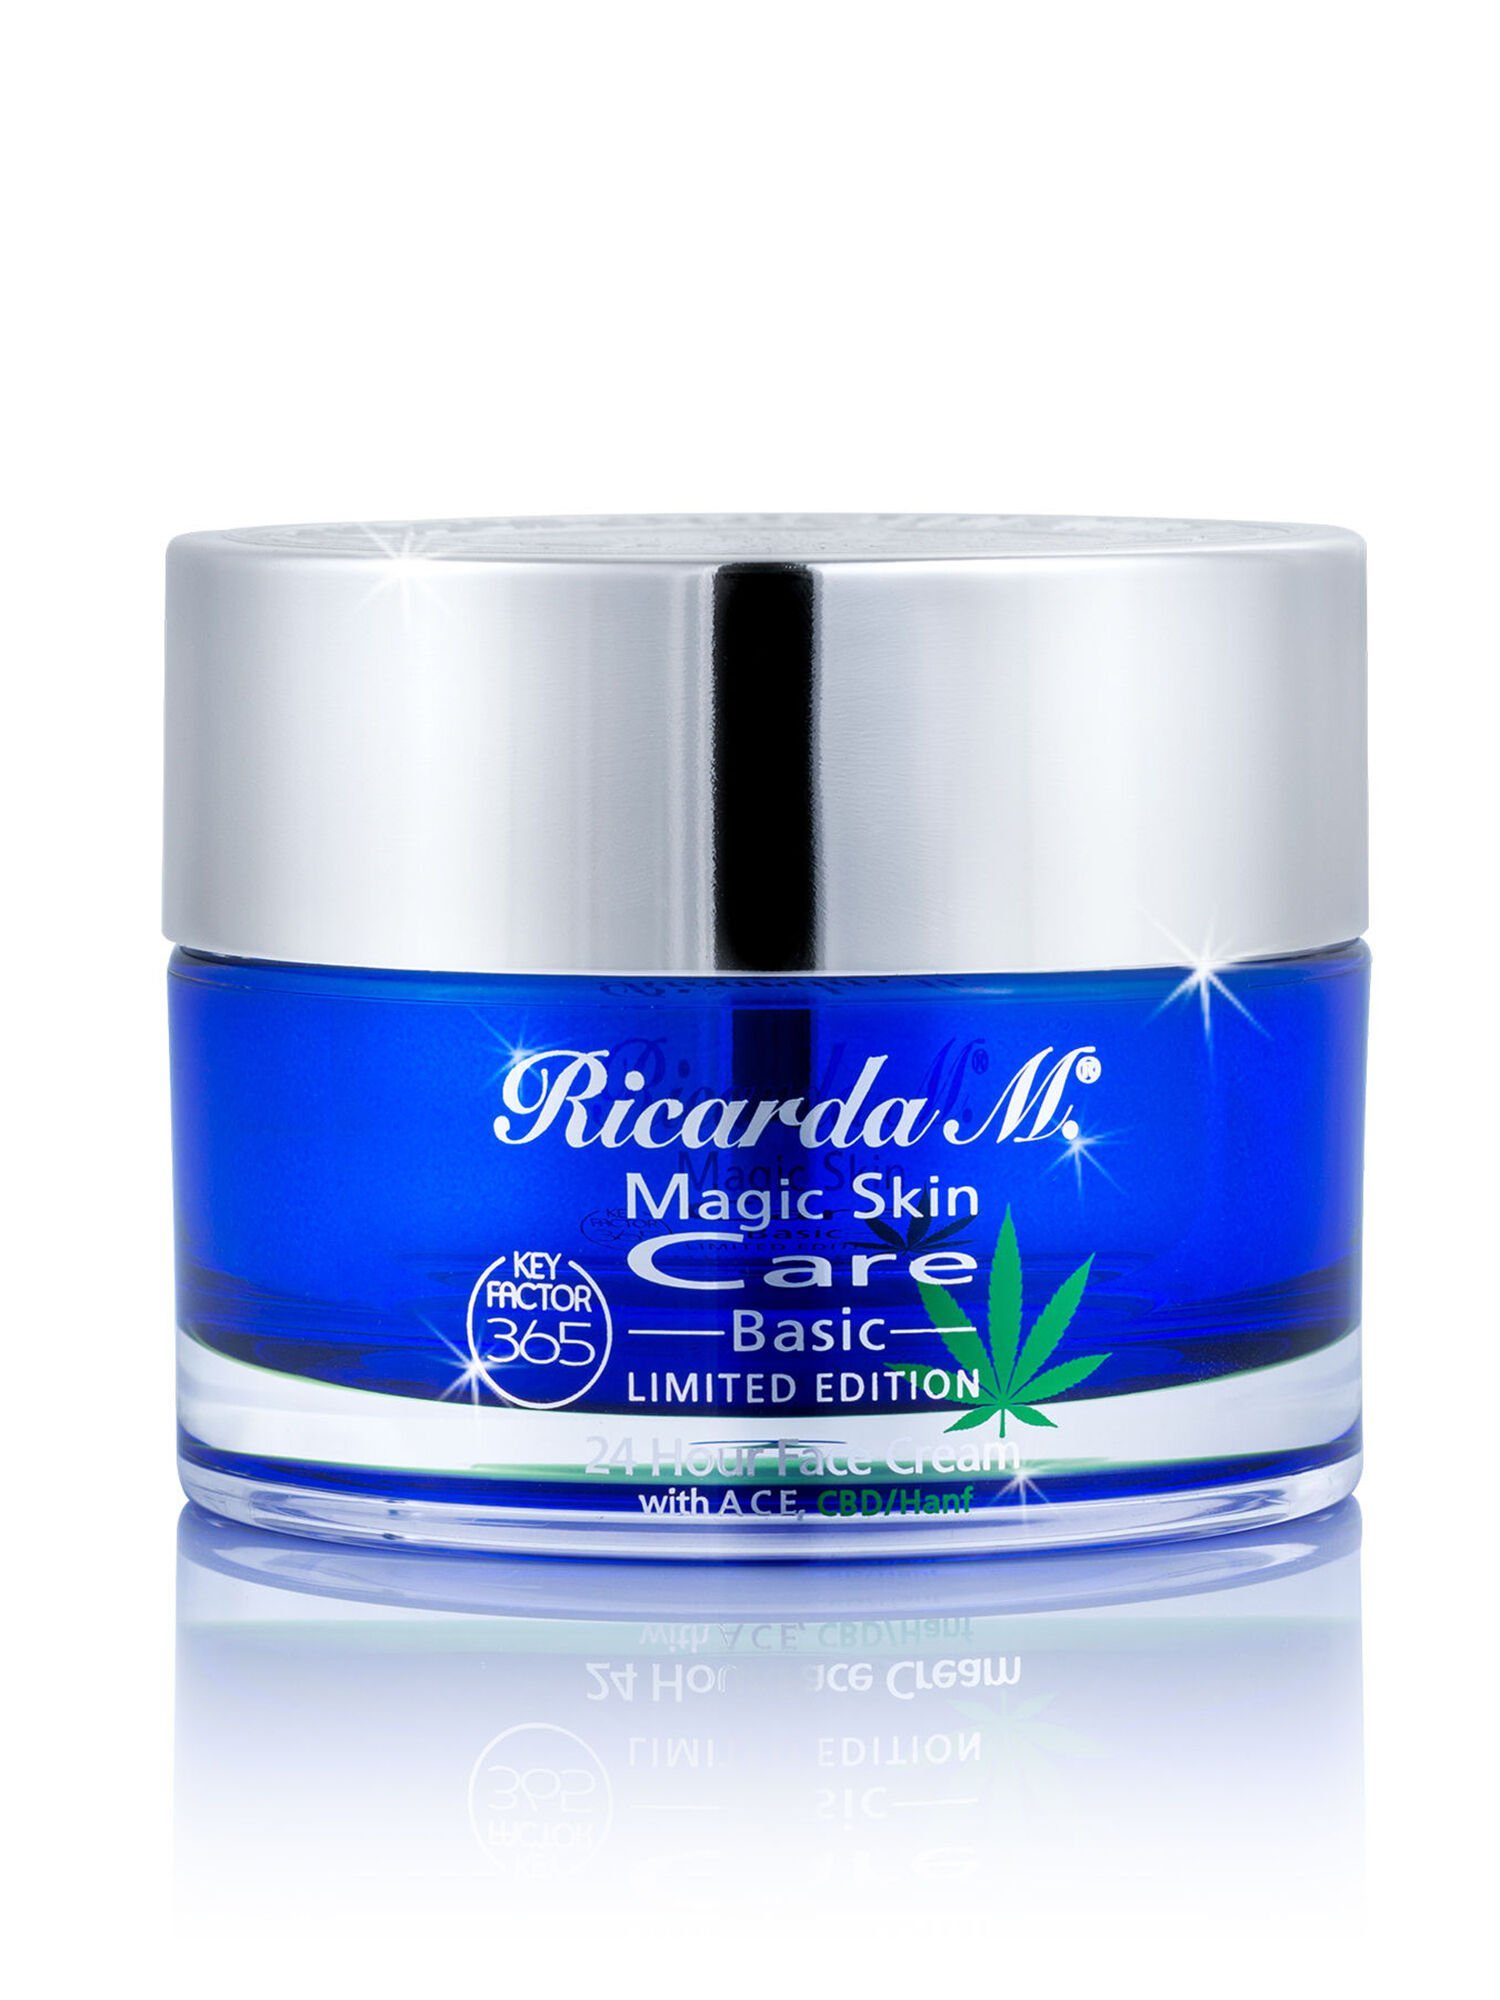 Ricarda M. Gesichtspflege "MSC Hour mit Hautbarriere Cream" Anti-Aging-Wirkstoff KeyFactor365, 24 gestärkte Face Basic 120ml, CBD/Hanf